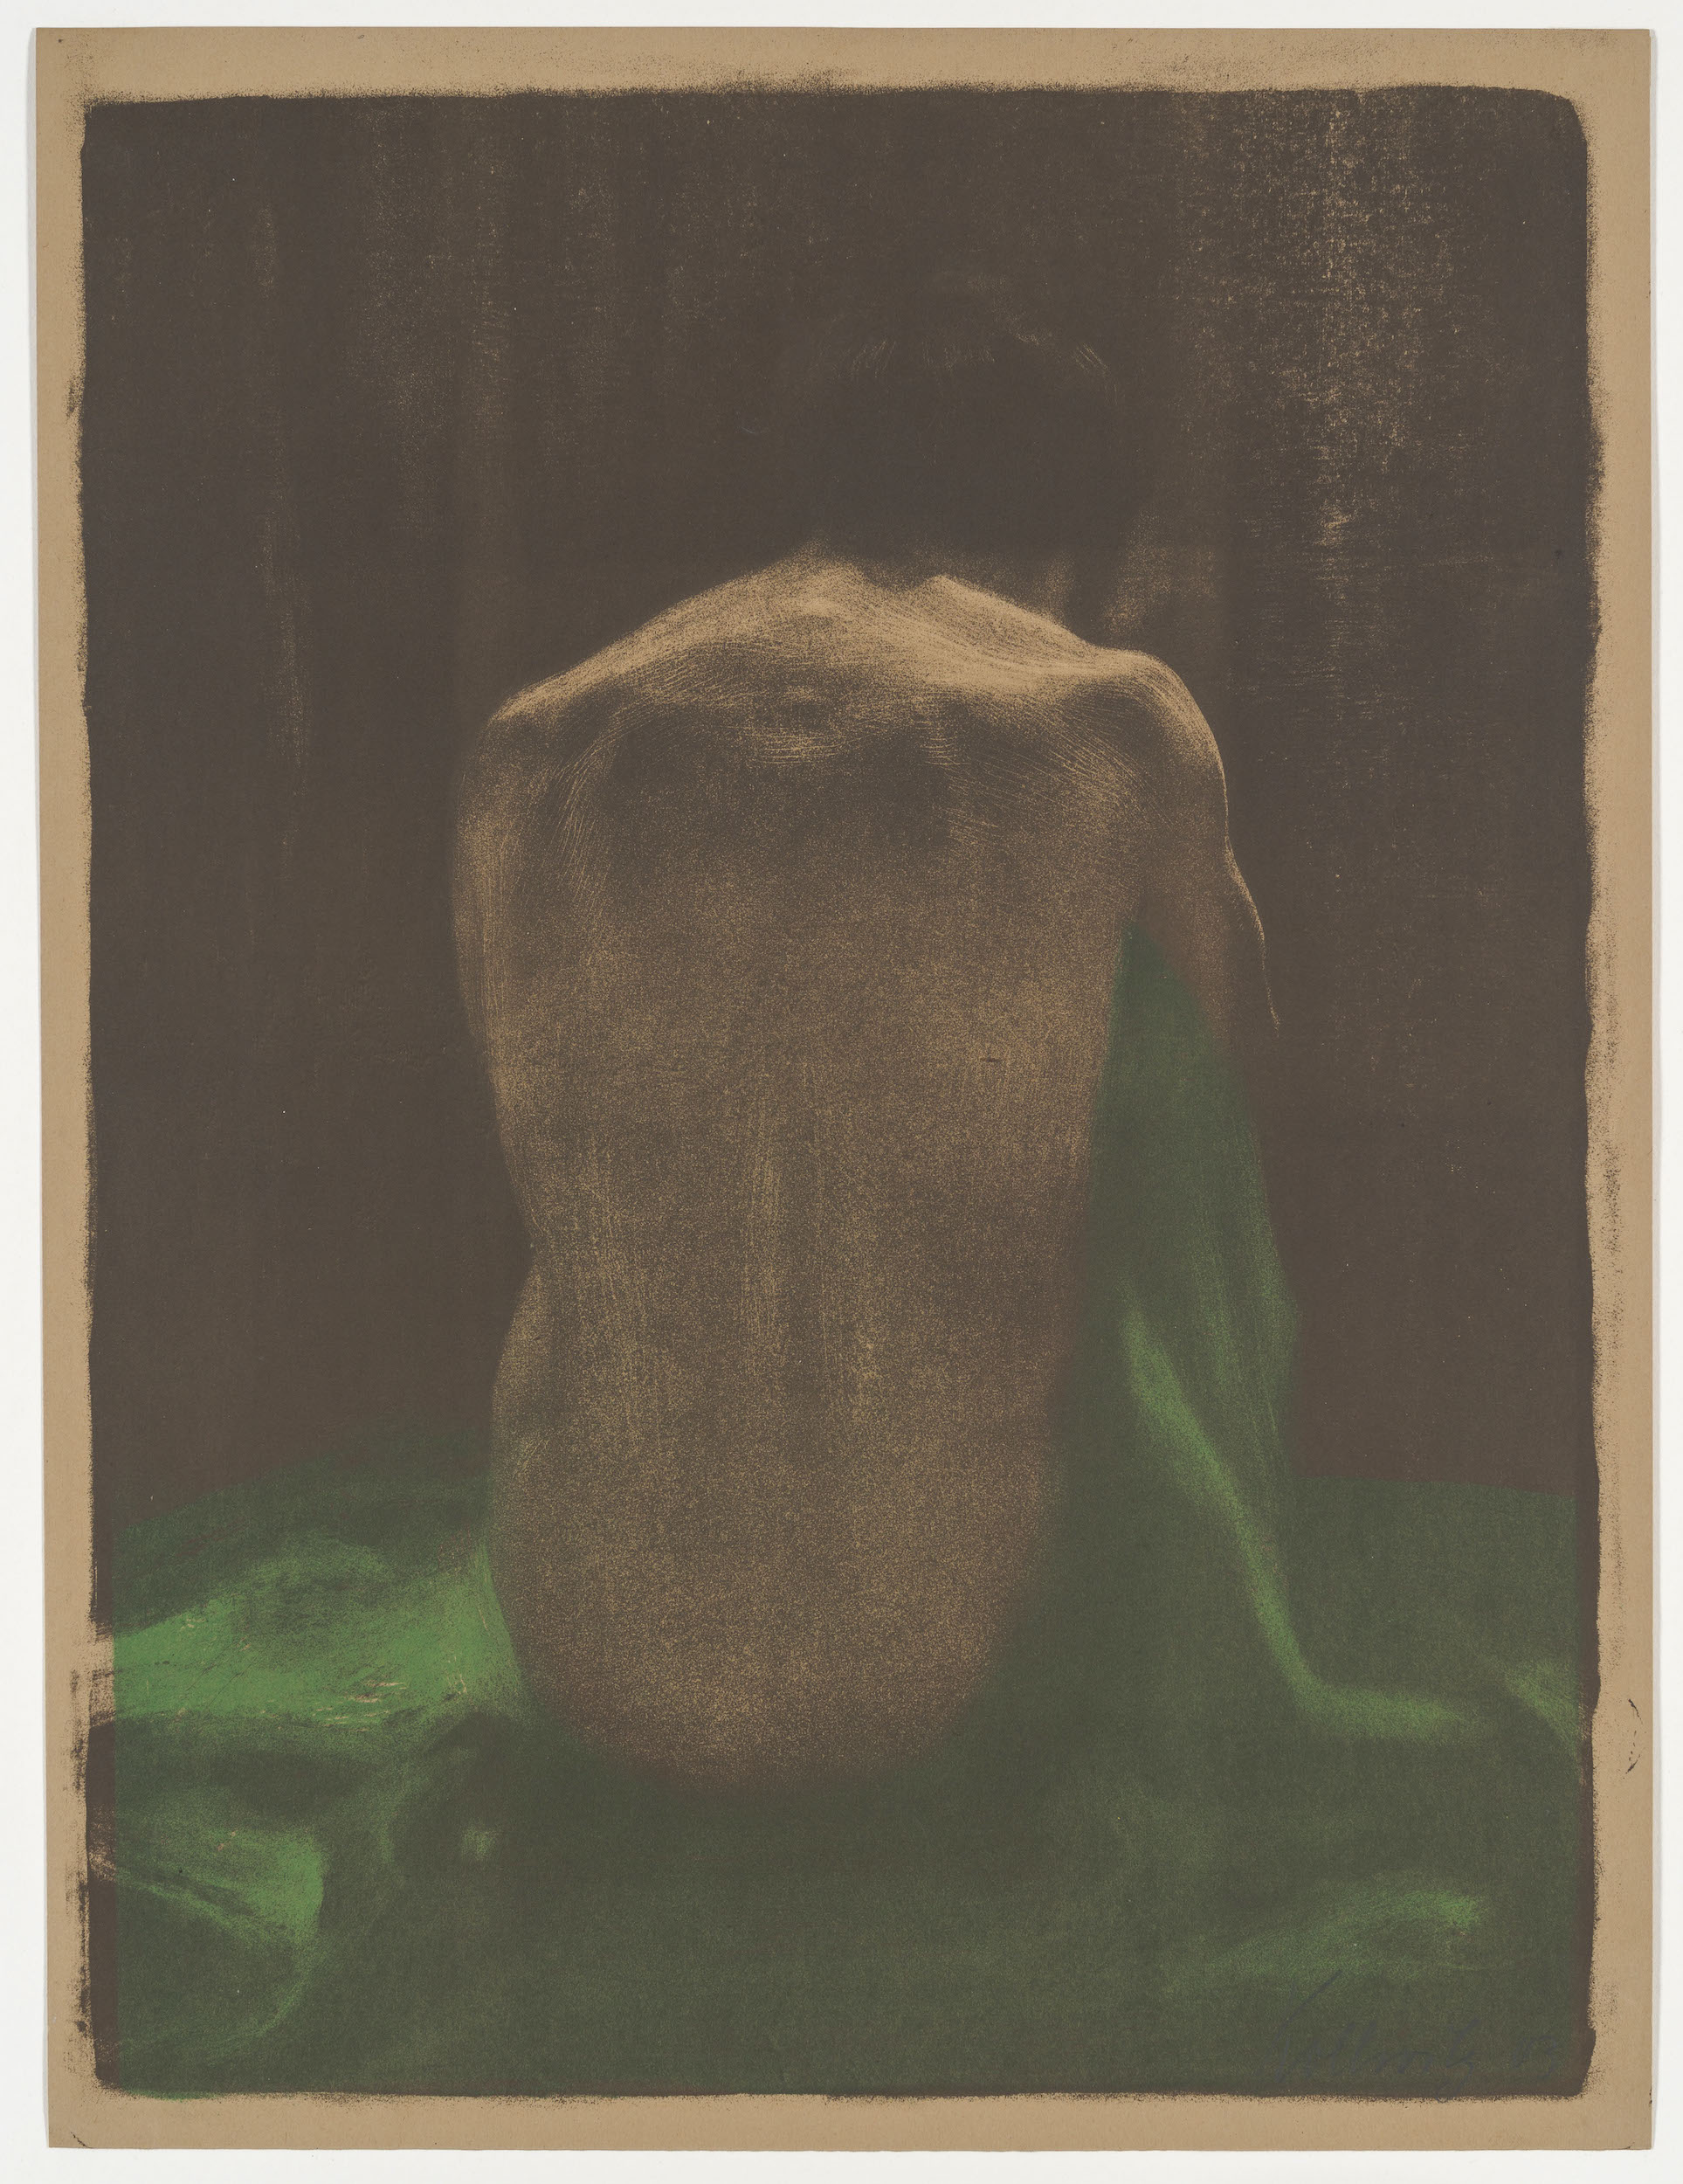 Desnudo femenino con mantón verde by Käthe Kollwitz - 1903 - 58 x 44 cm Colecciones estatales de arte de Dresde